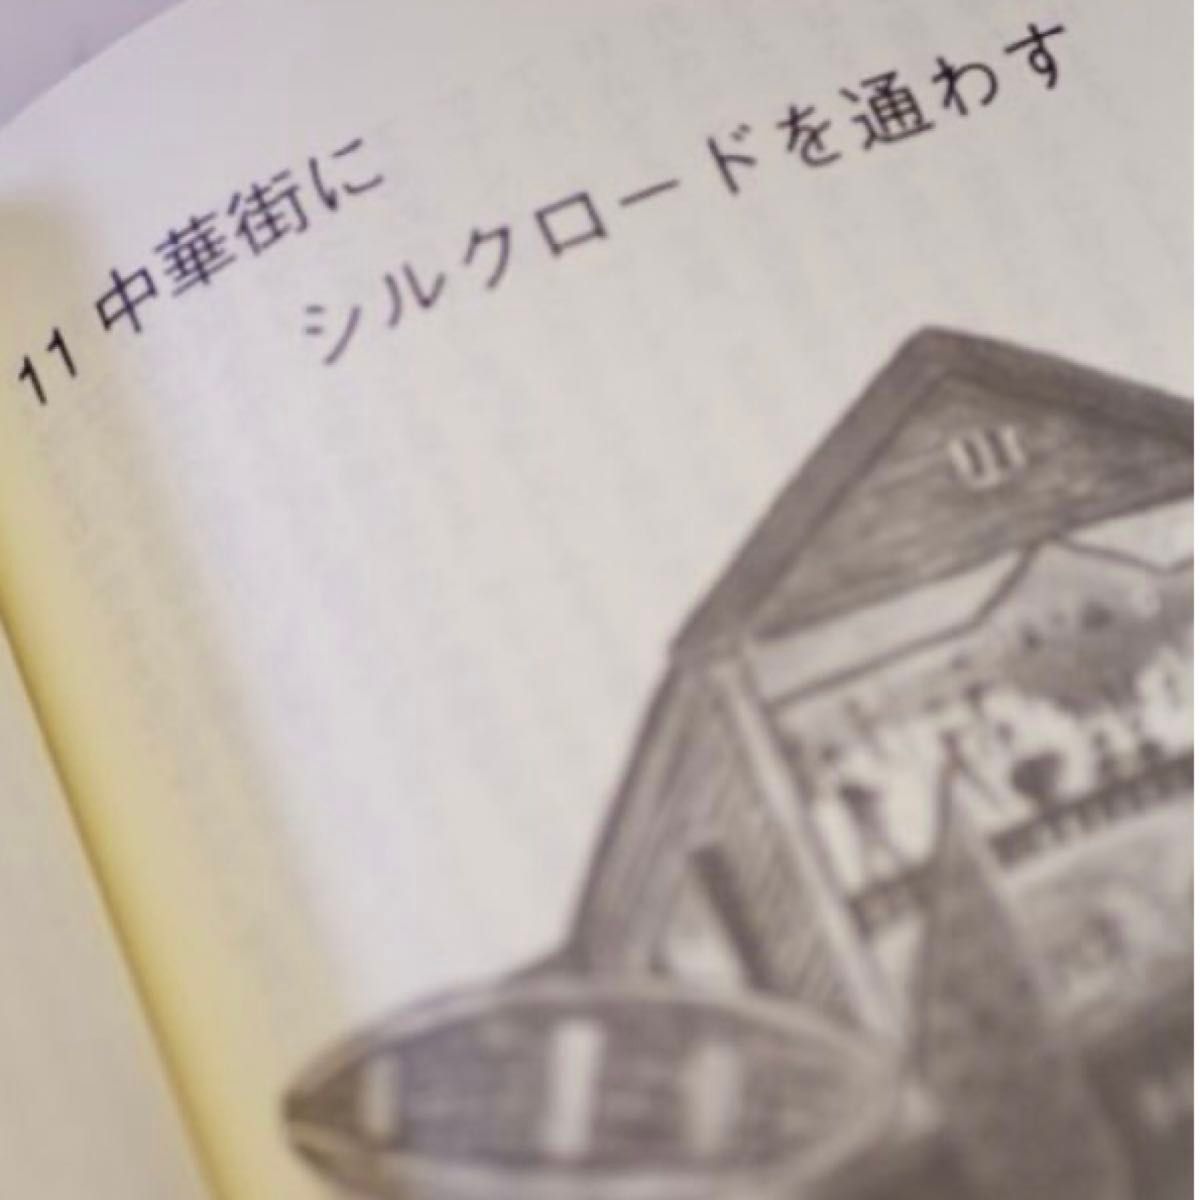 『フォークロア世界への旅』チャイハネBOSS/進藤幸彦の本